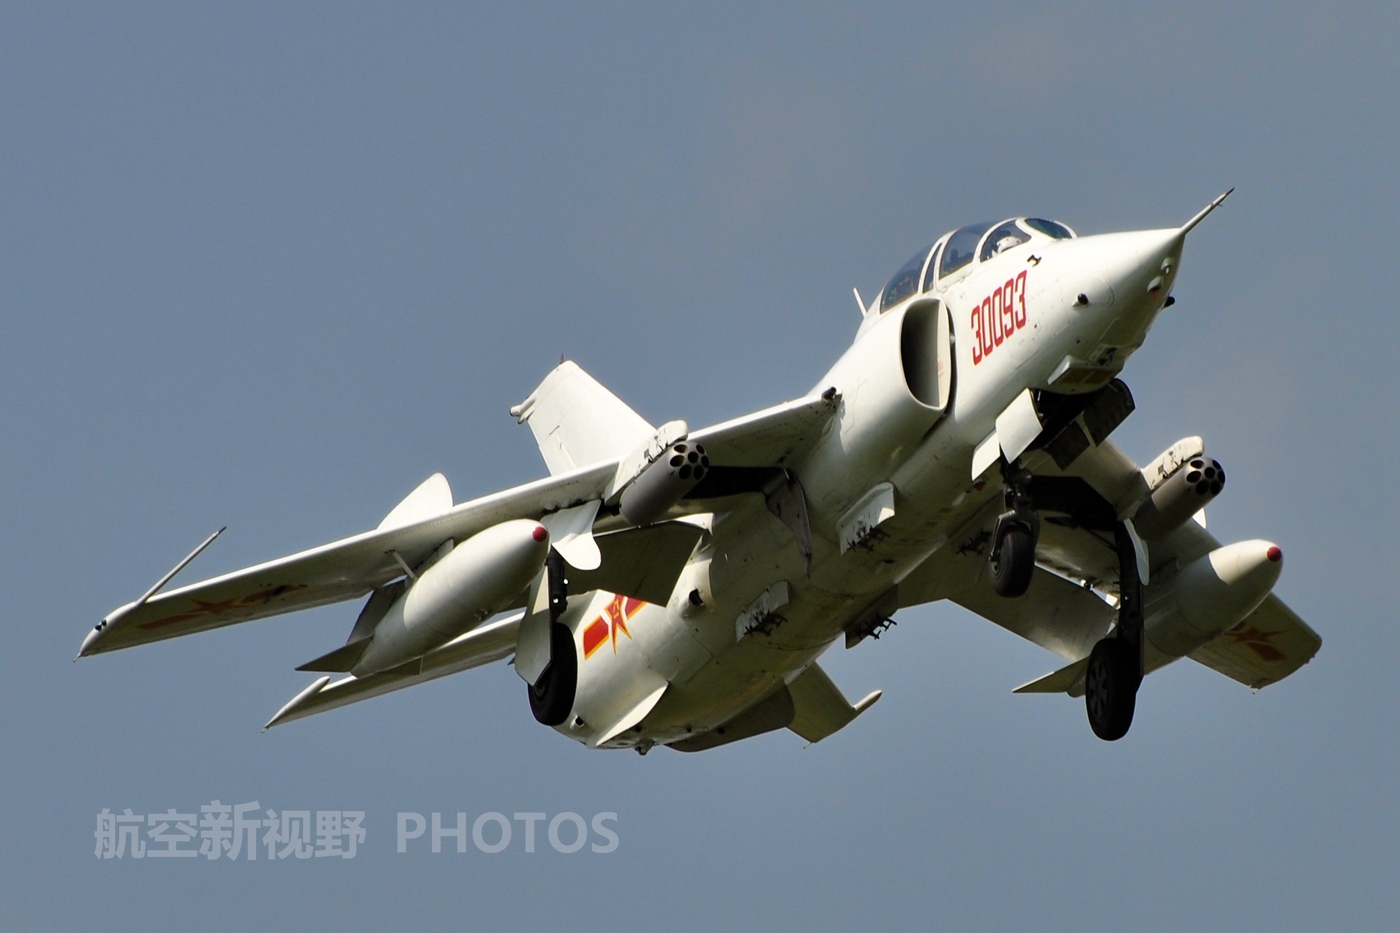 中国空军强5强击机图集国产第一款专业攻击机